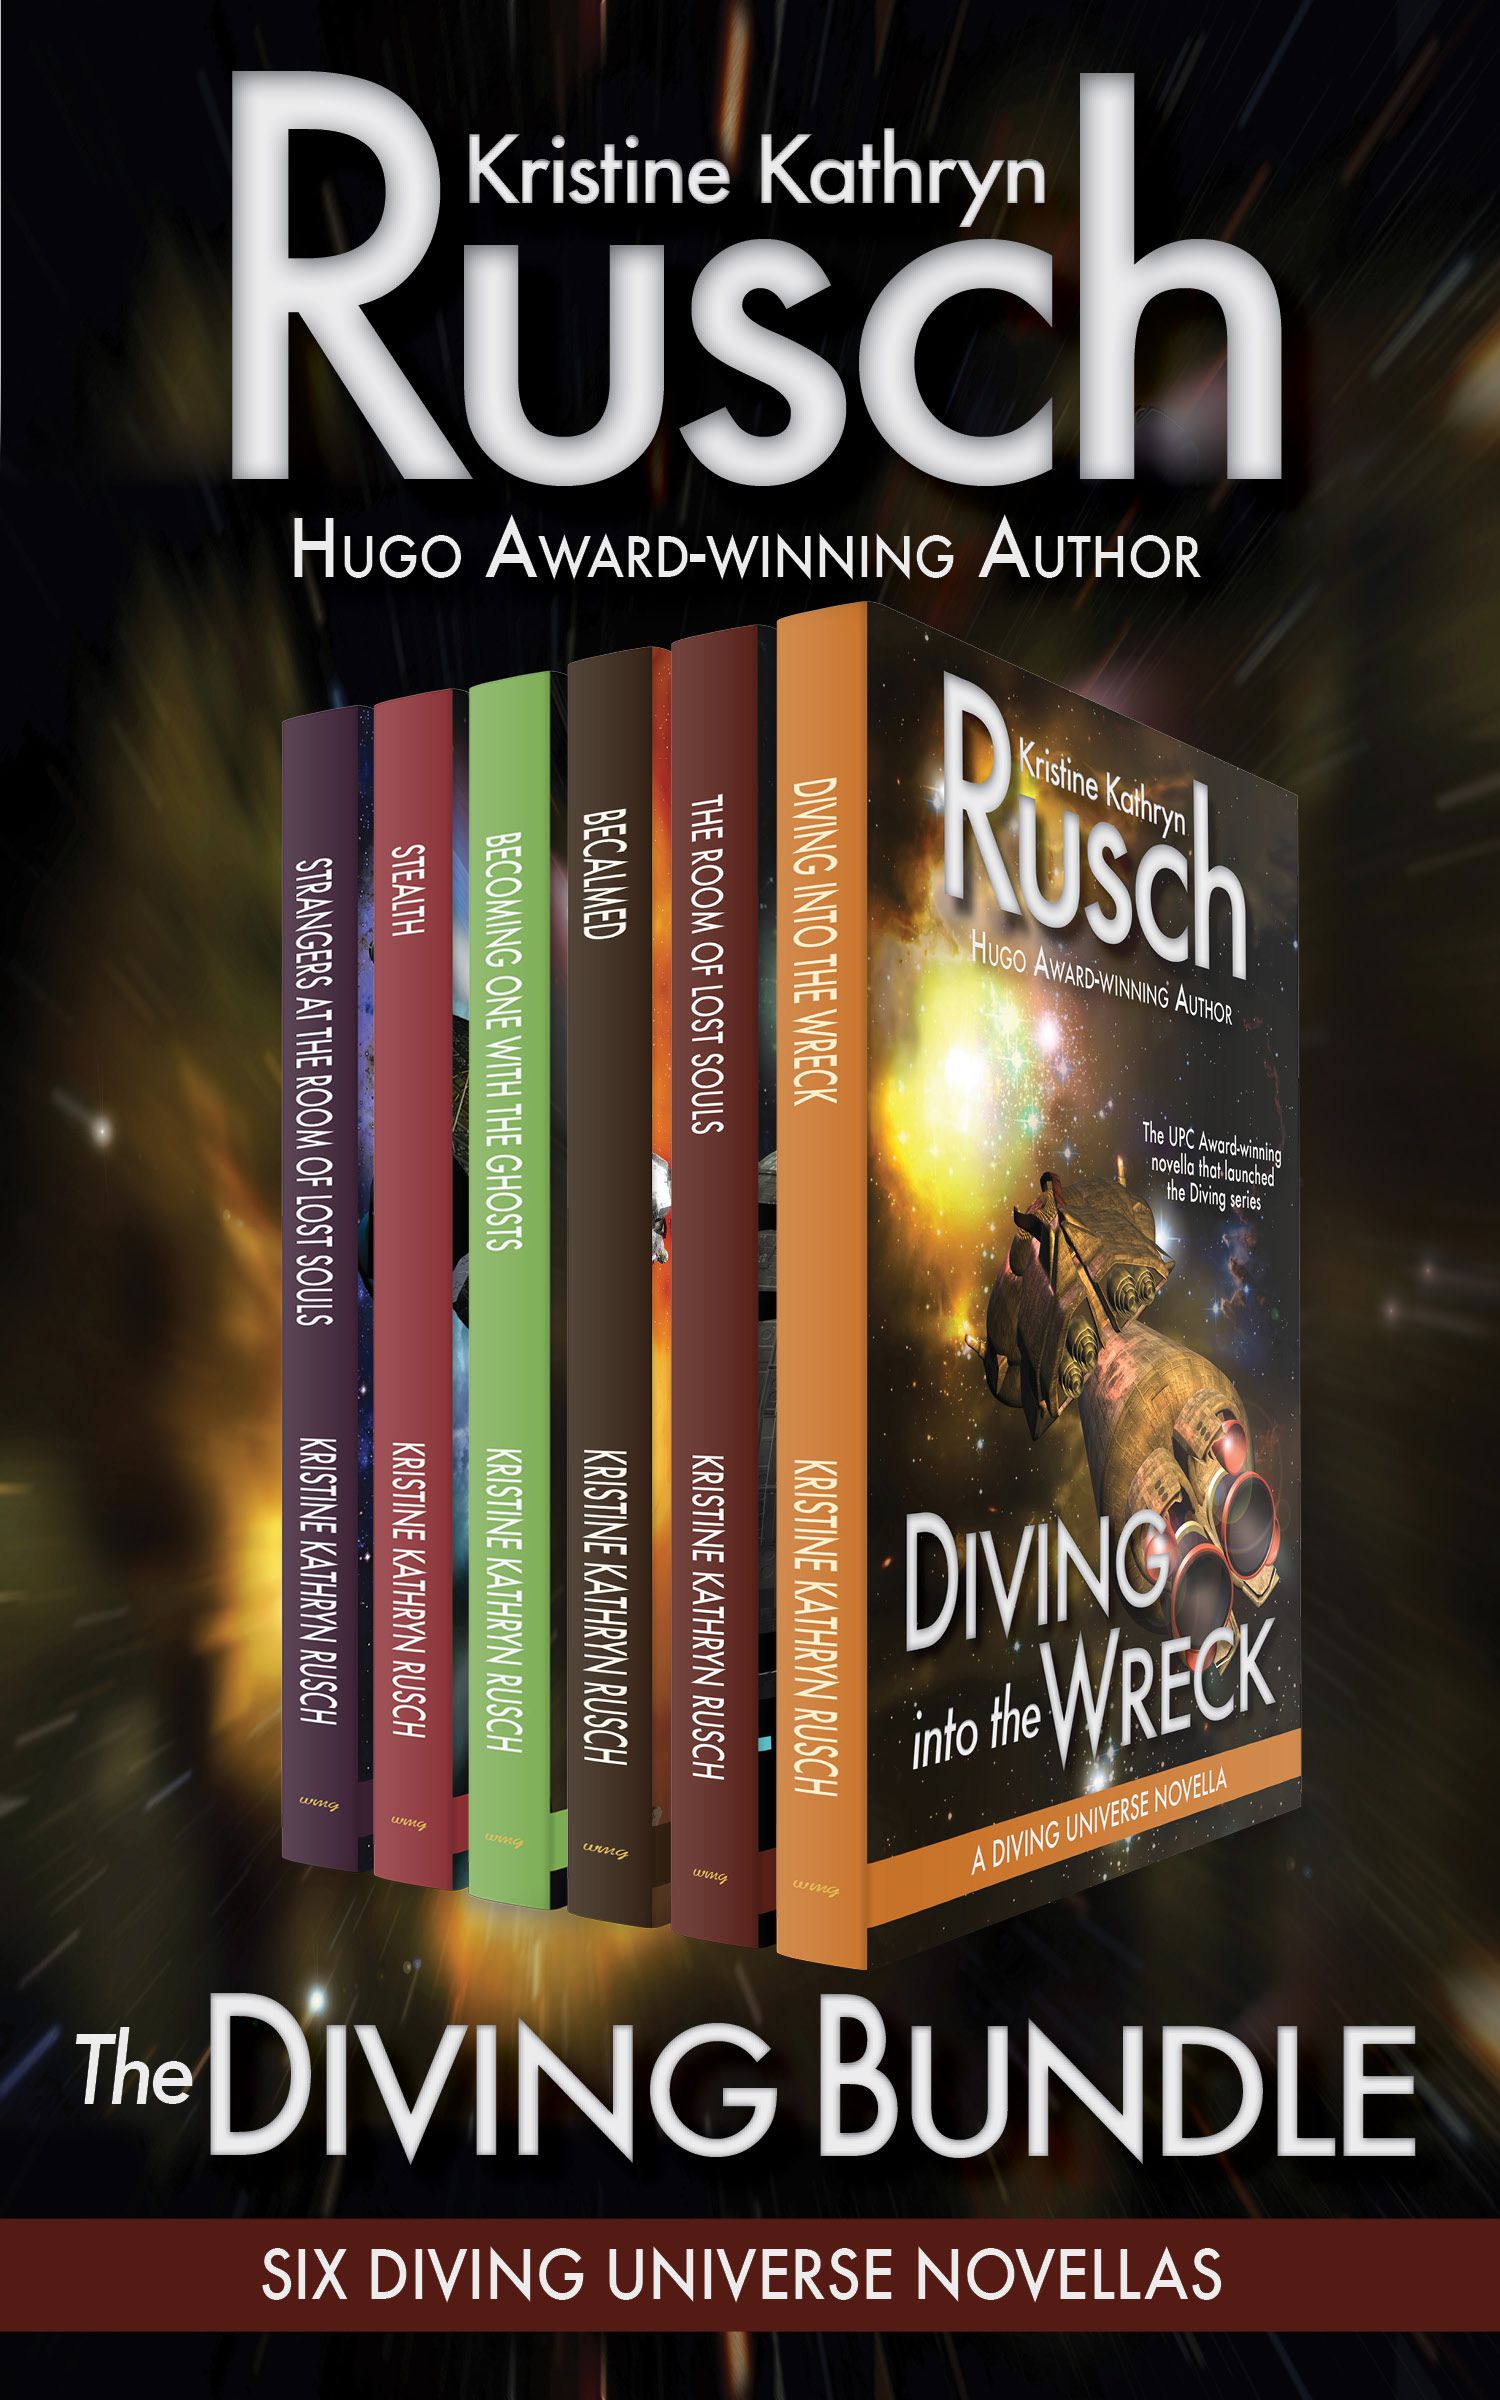 The Diving Bundle: Six Diving Universe Novellas (2013)